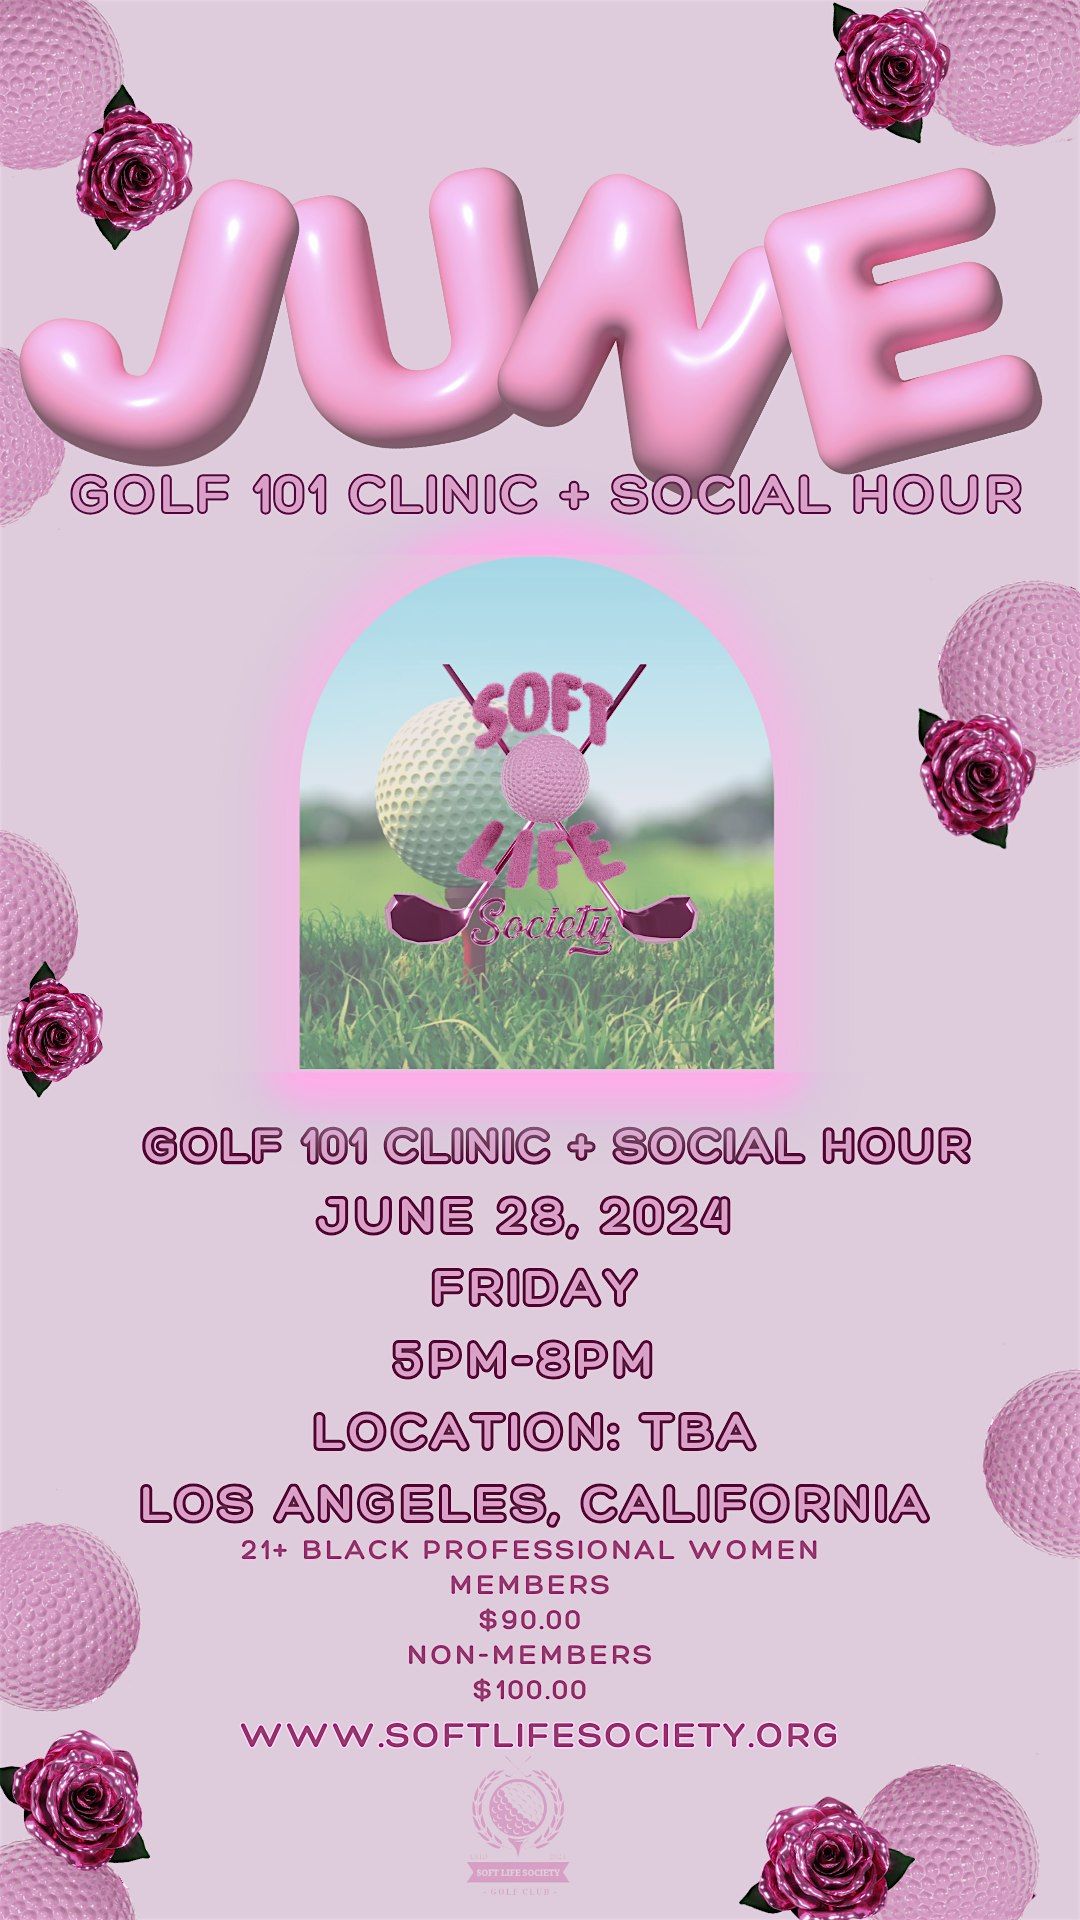 Golf Clinic 101 + Social Hour